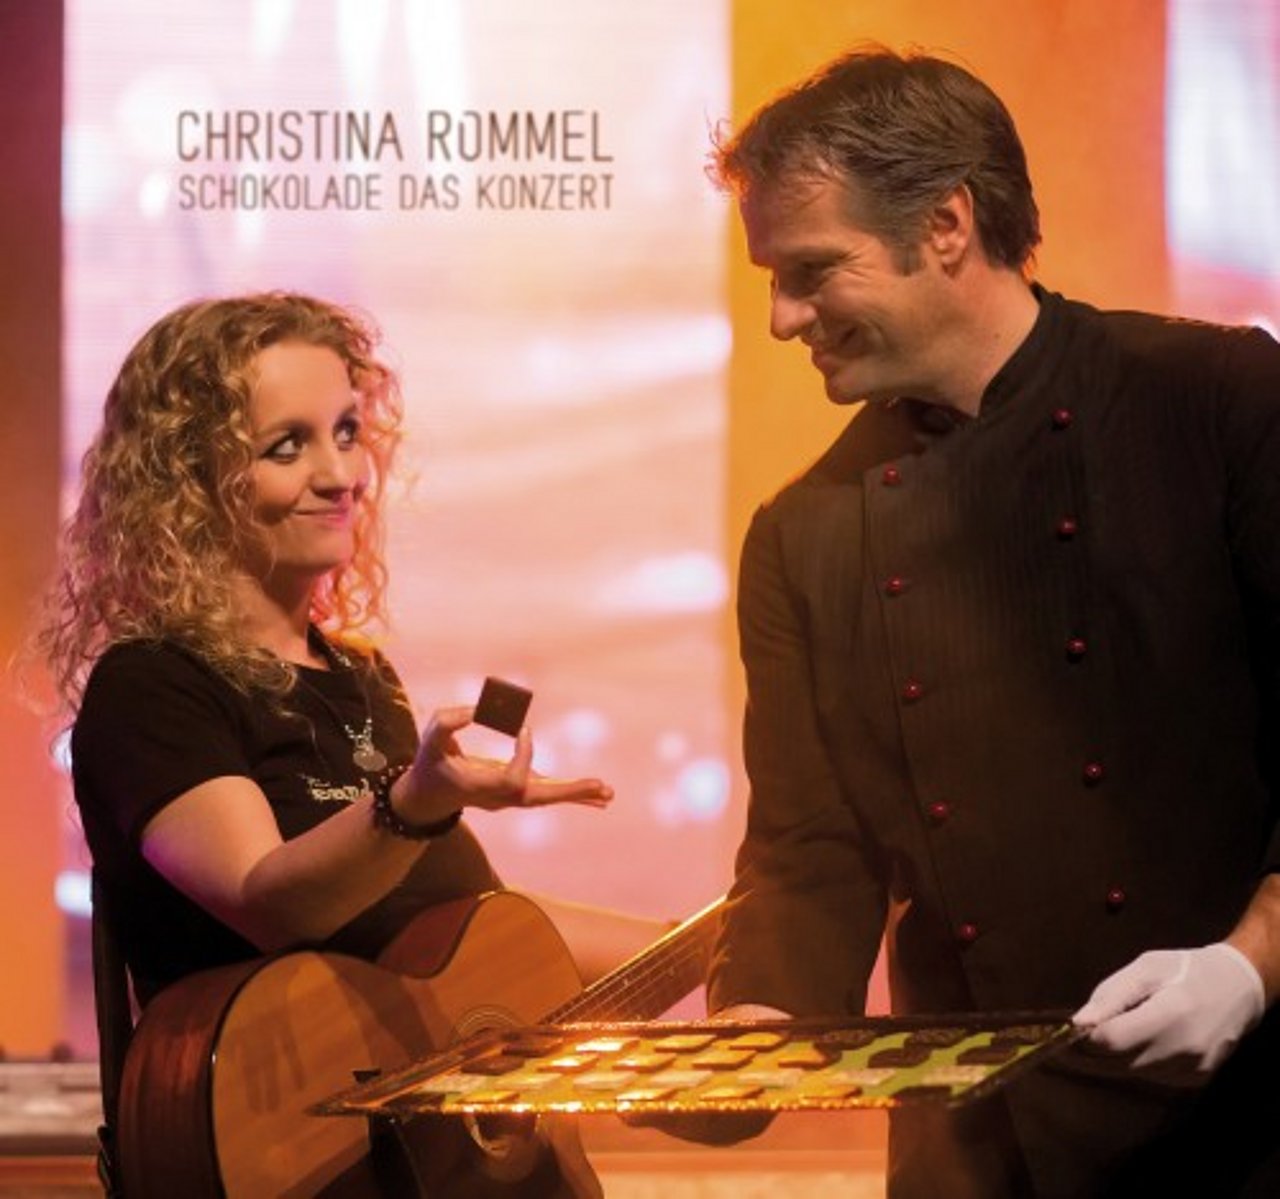 Christina Rommel - Schokolade das Konzert
Deutscher Schoko-Rock vom Feinsten - serviert mit edler Schokolade